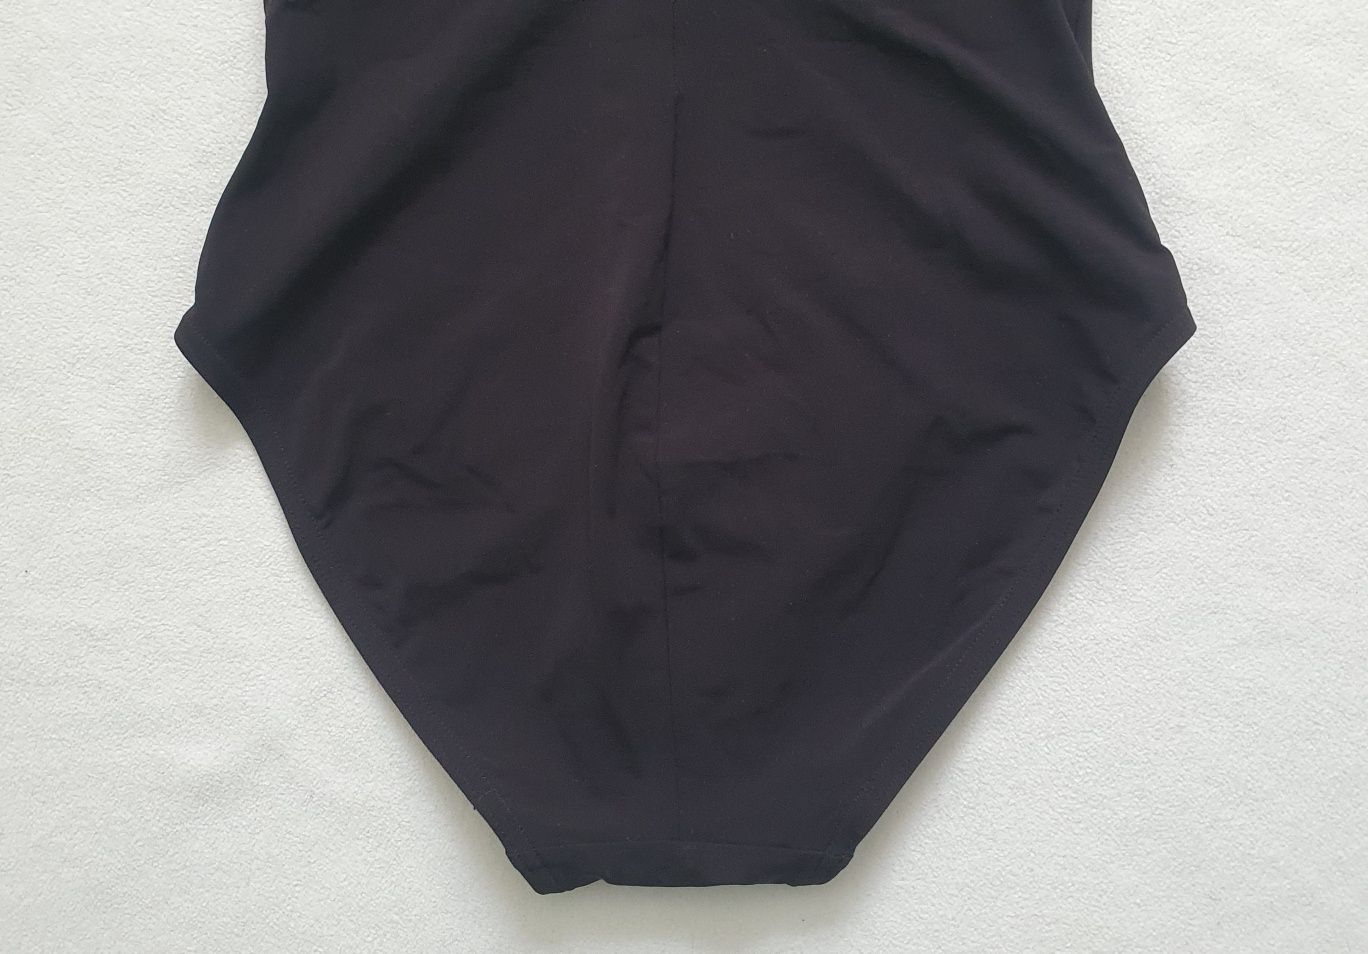 Damski modelujący strój kąpielowy SPEEDO Contourluxe, rozmiar 36 (S)